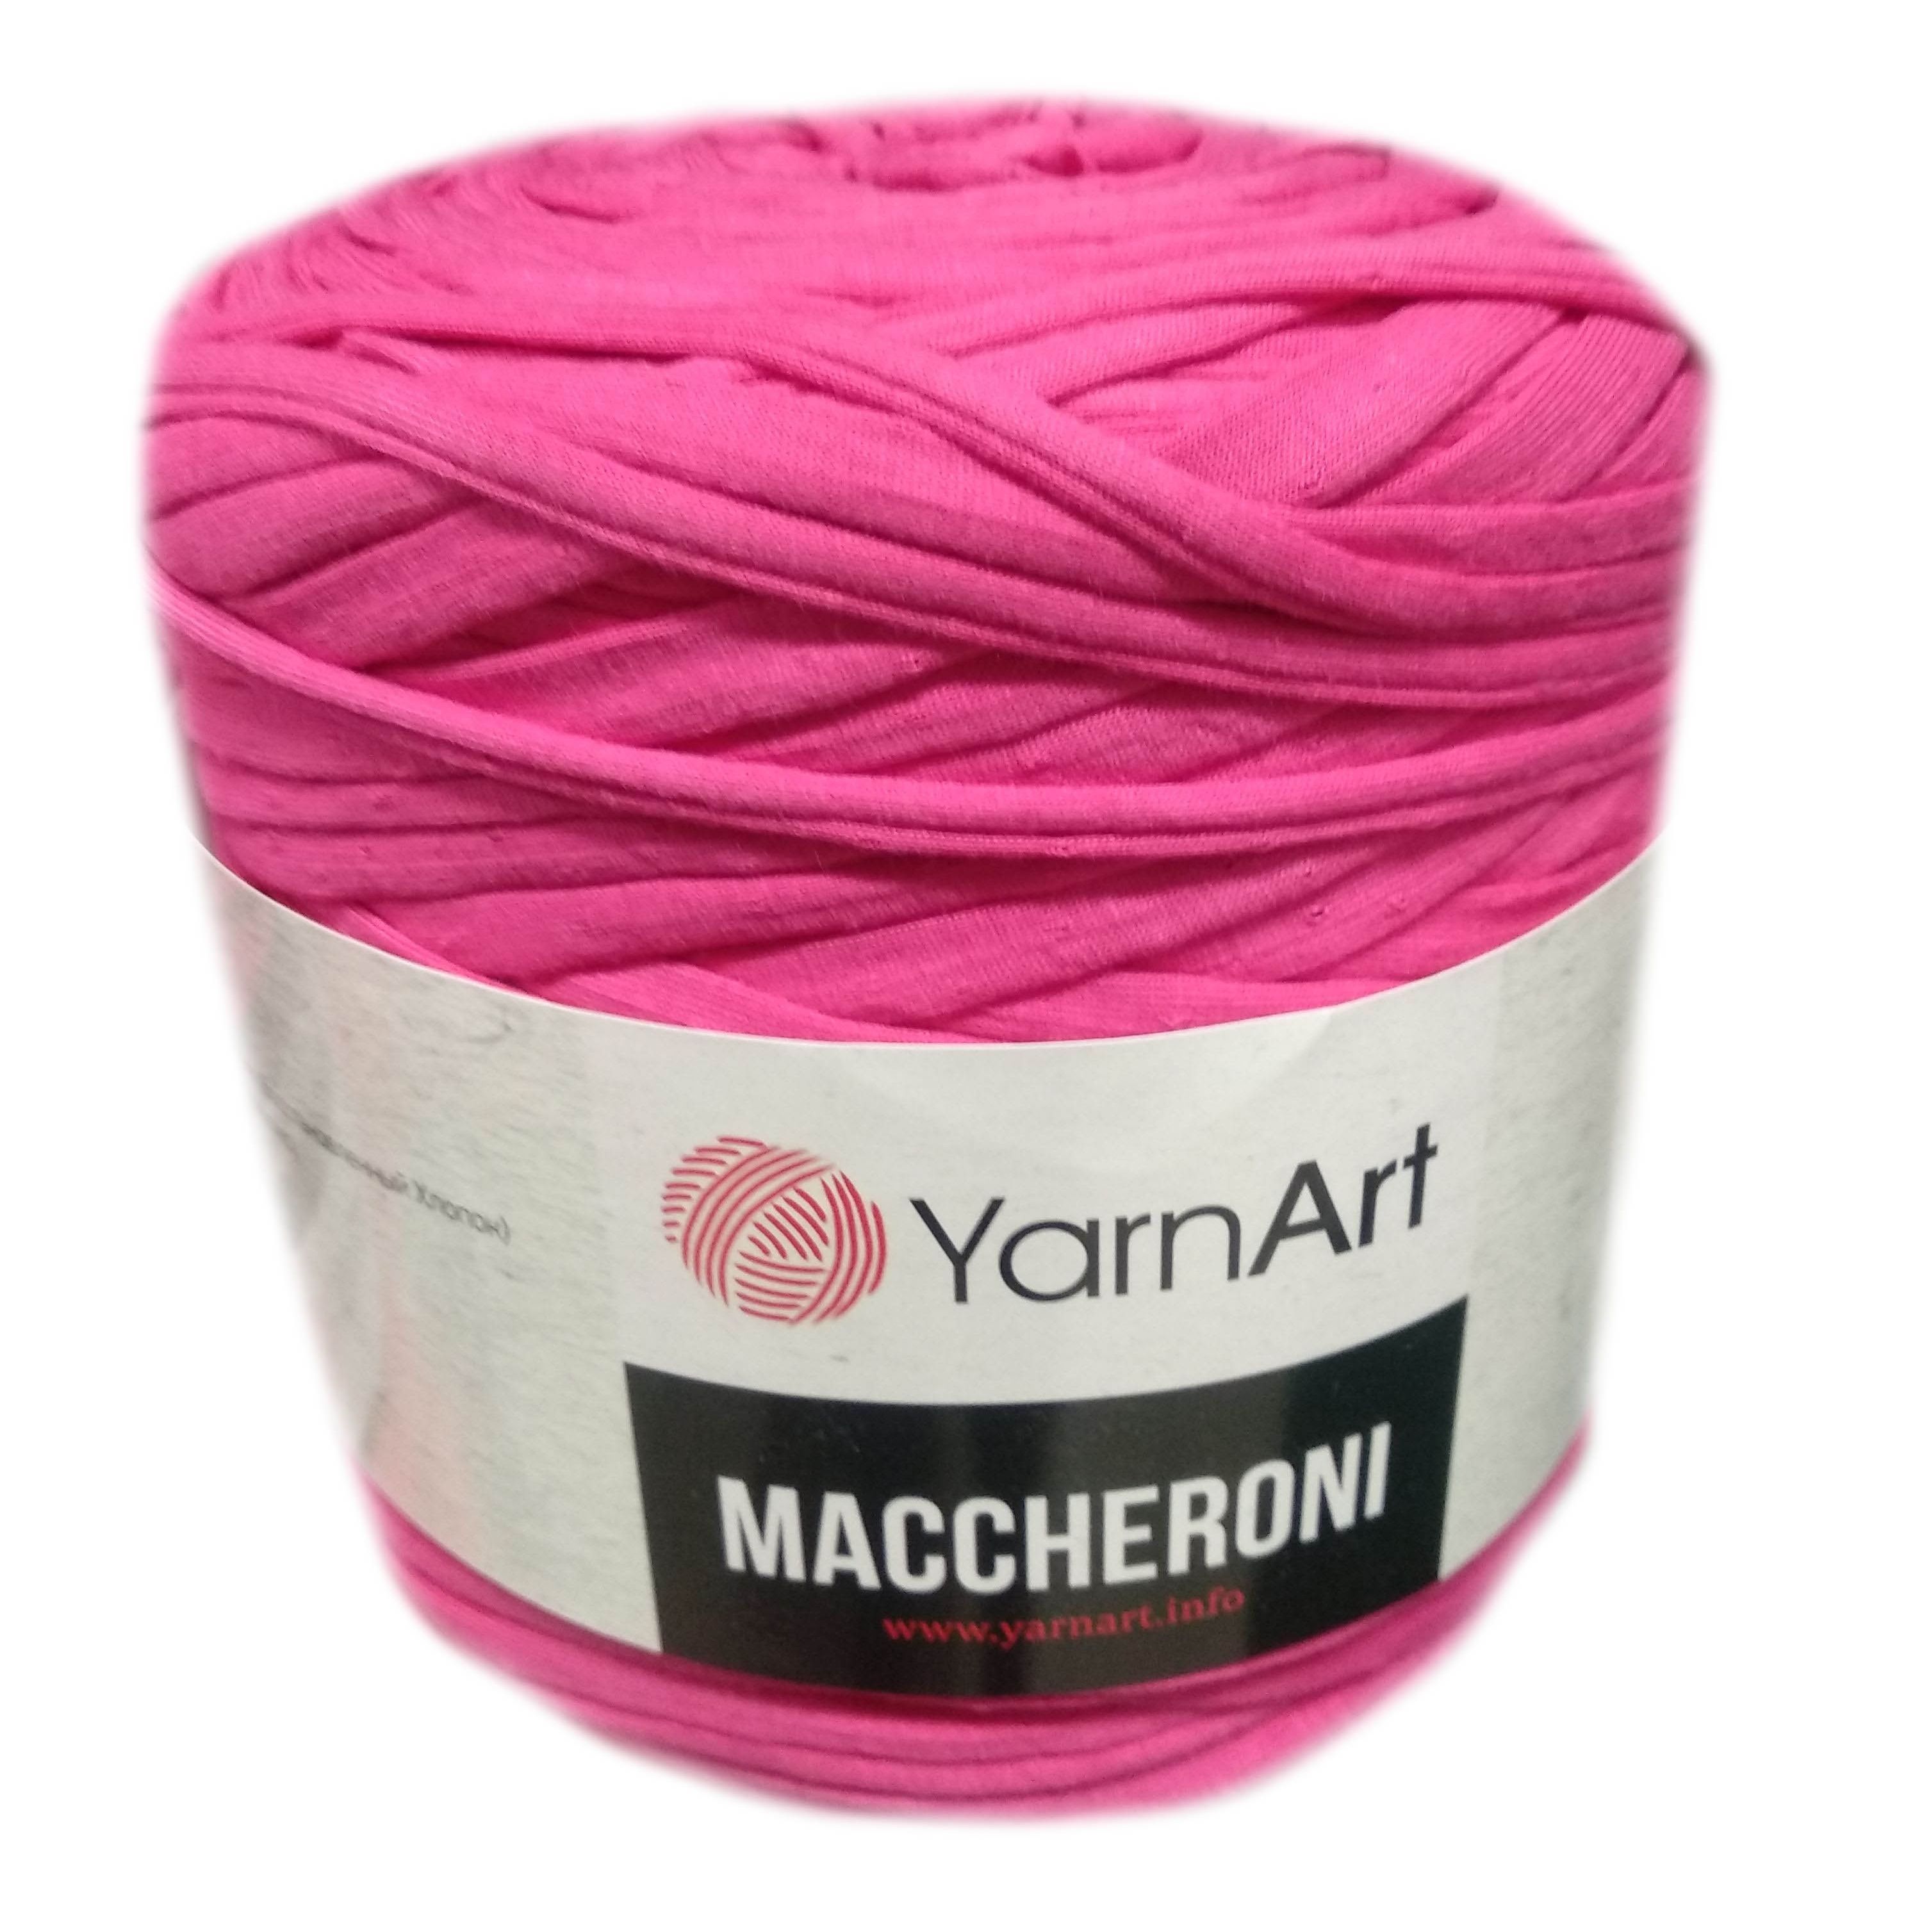 YarnArt MACCHERONI, pink póló fonal.Tű 12-15 mm.